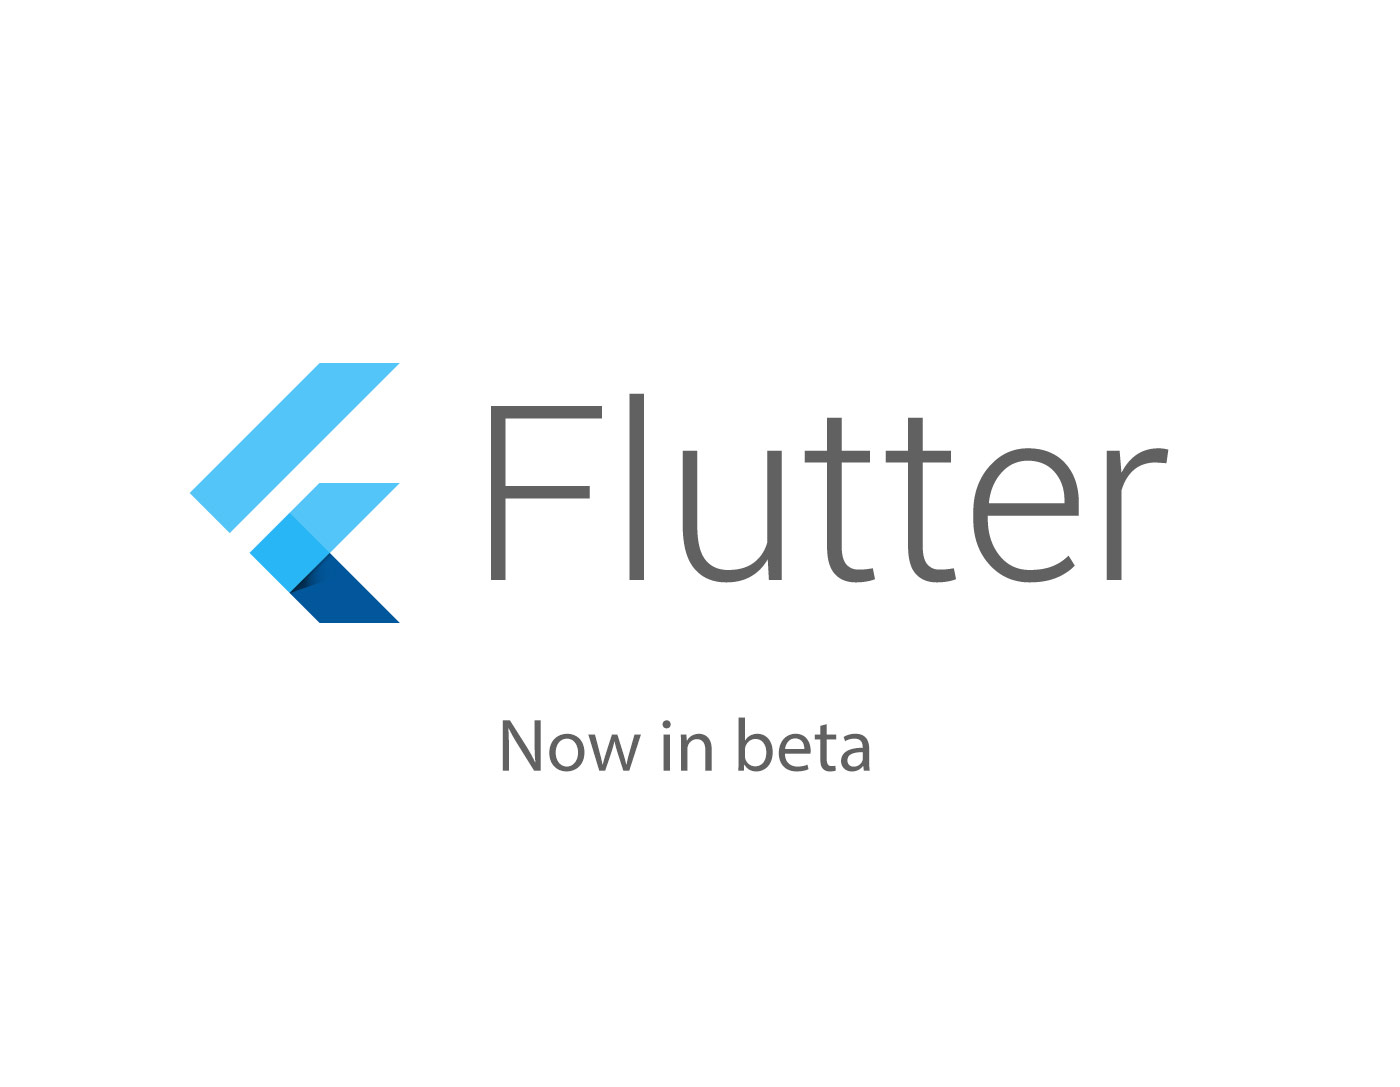 Google Flutter in beta mode.